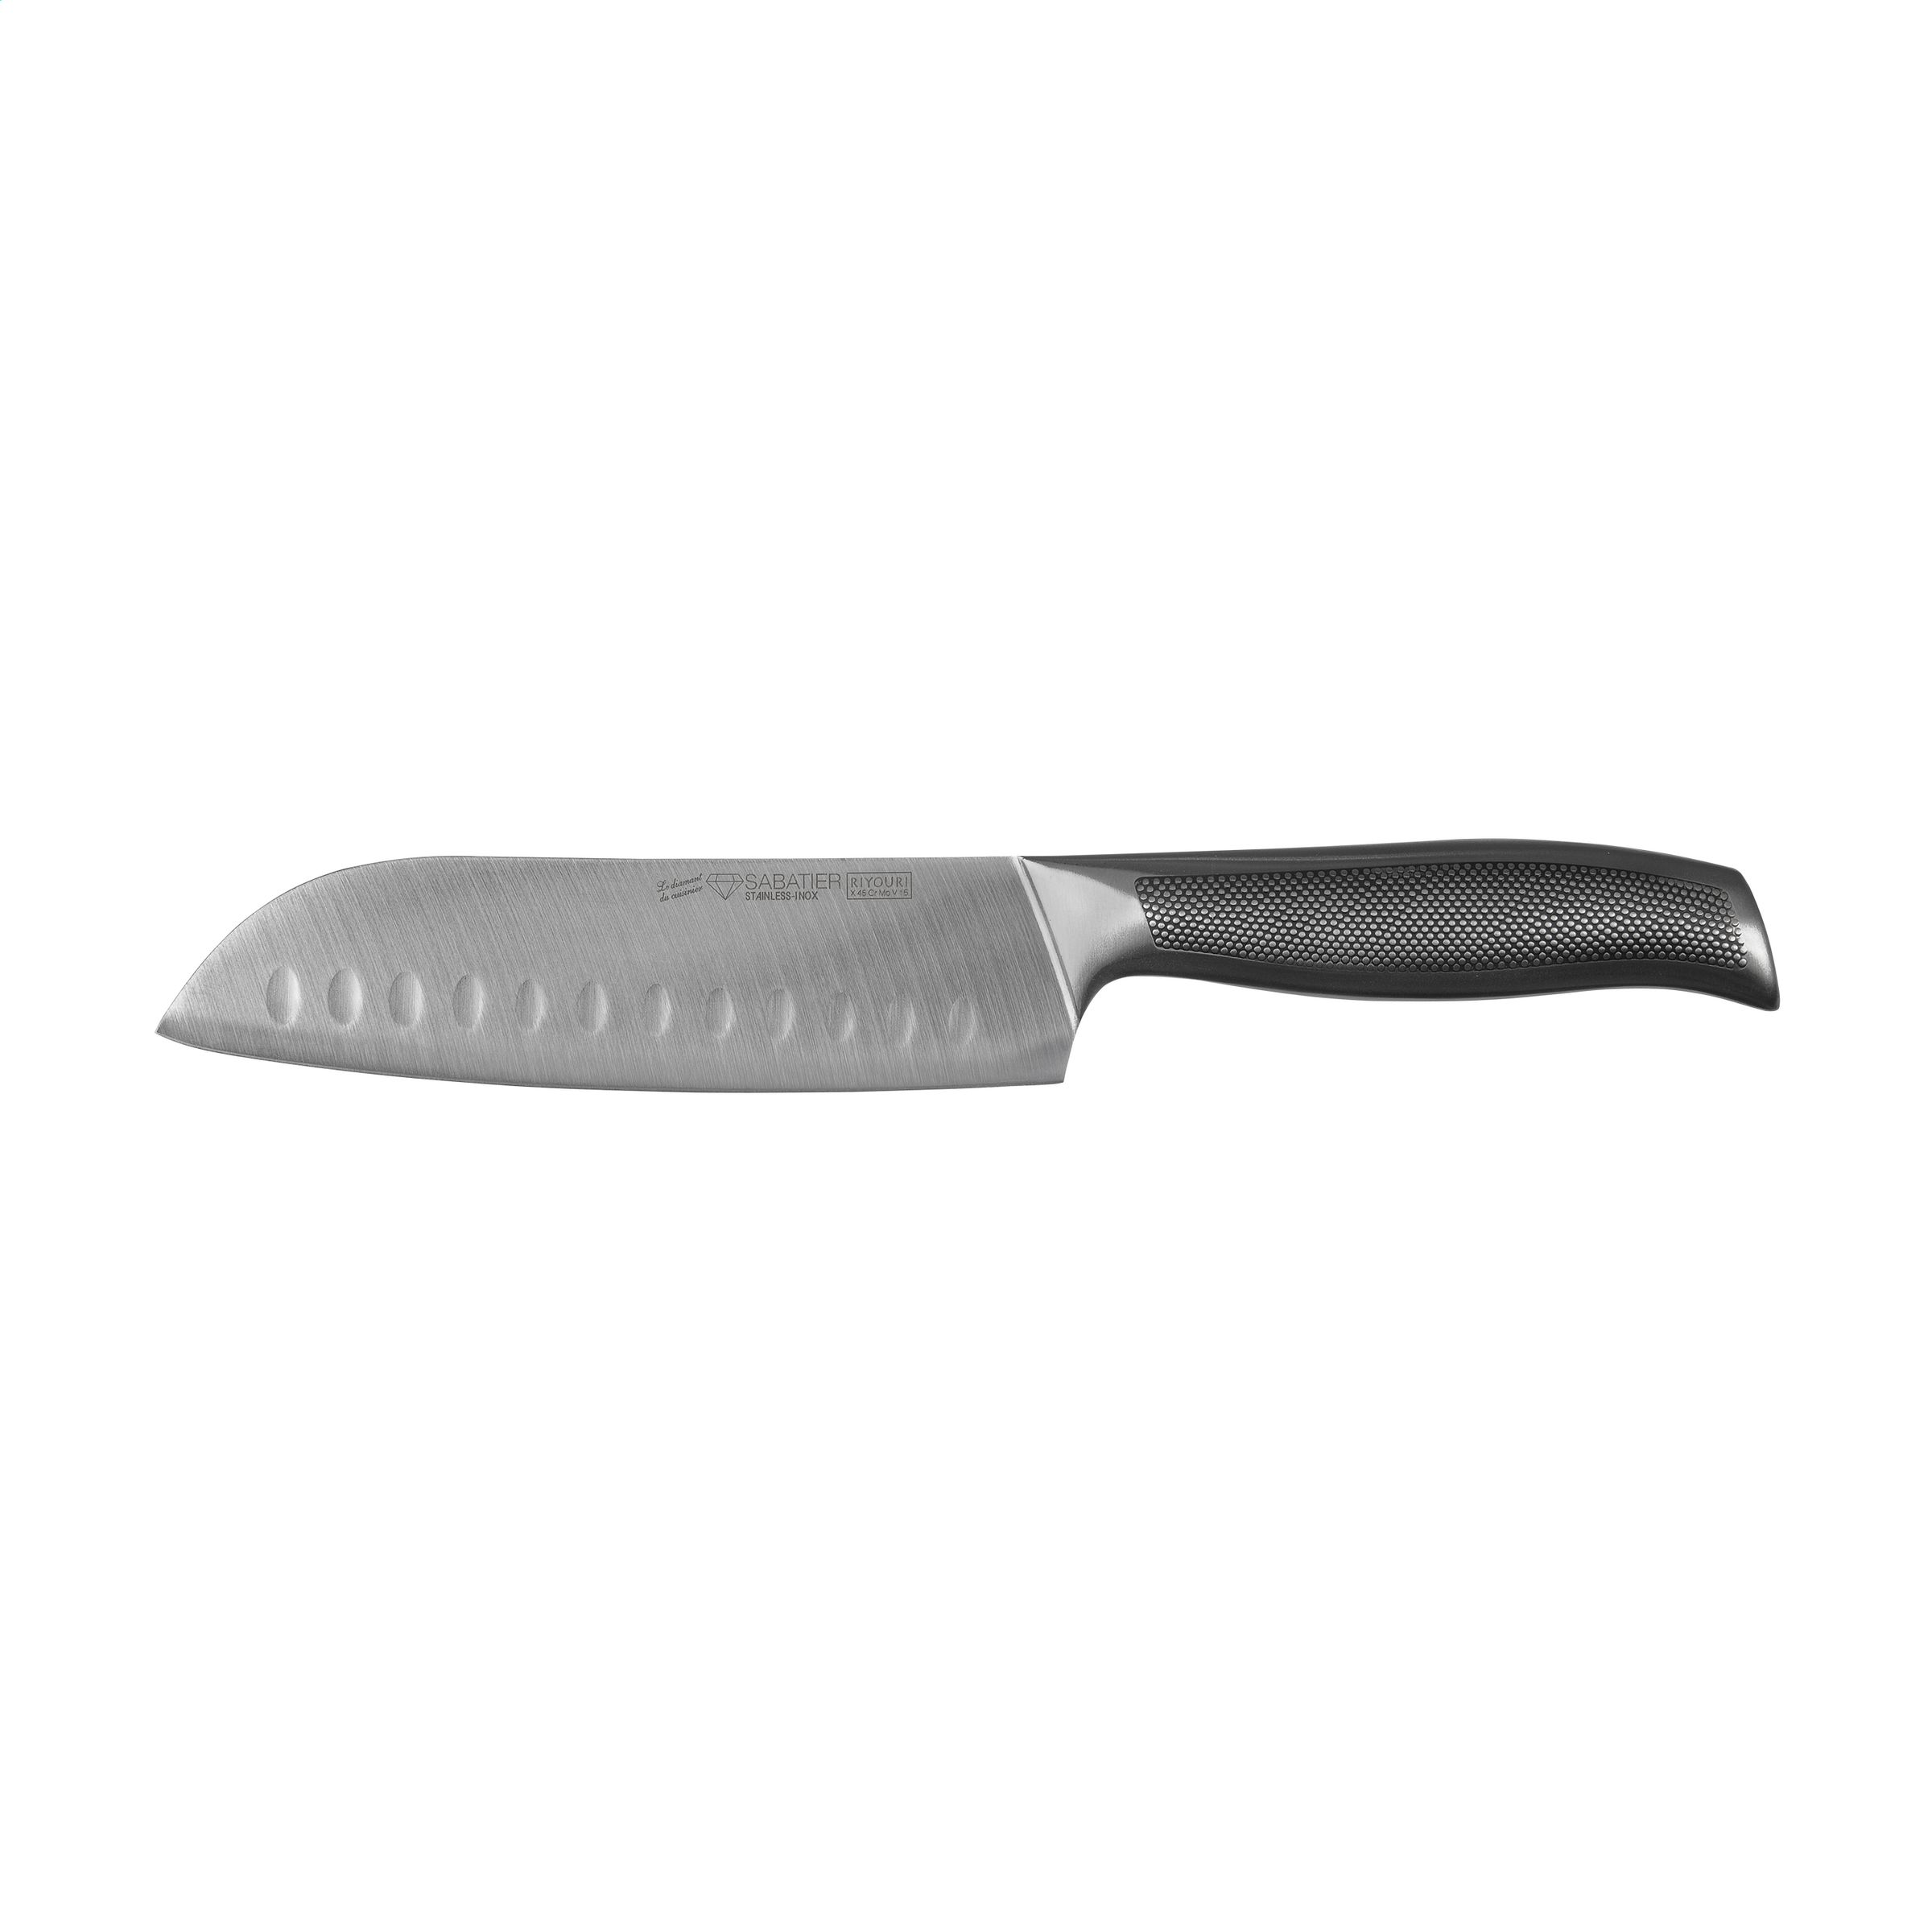 Couteau polyvalent asiatique avec une lame large de 17 cm - Juziers - Zaprinta France